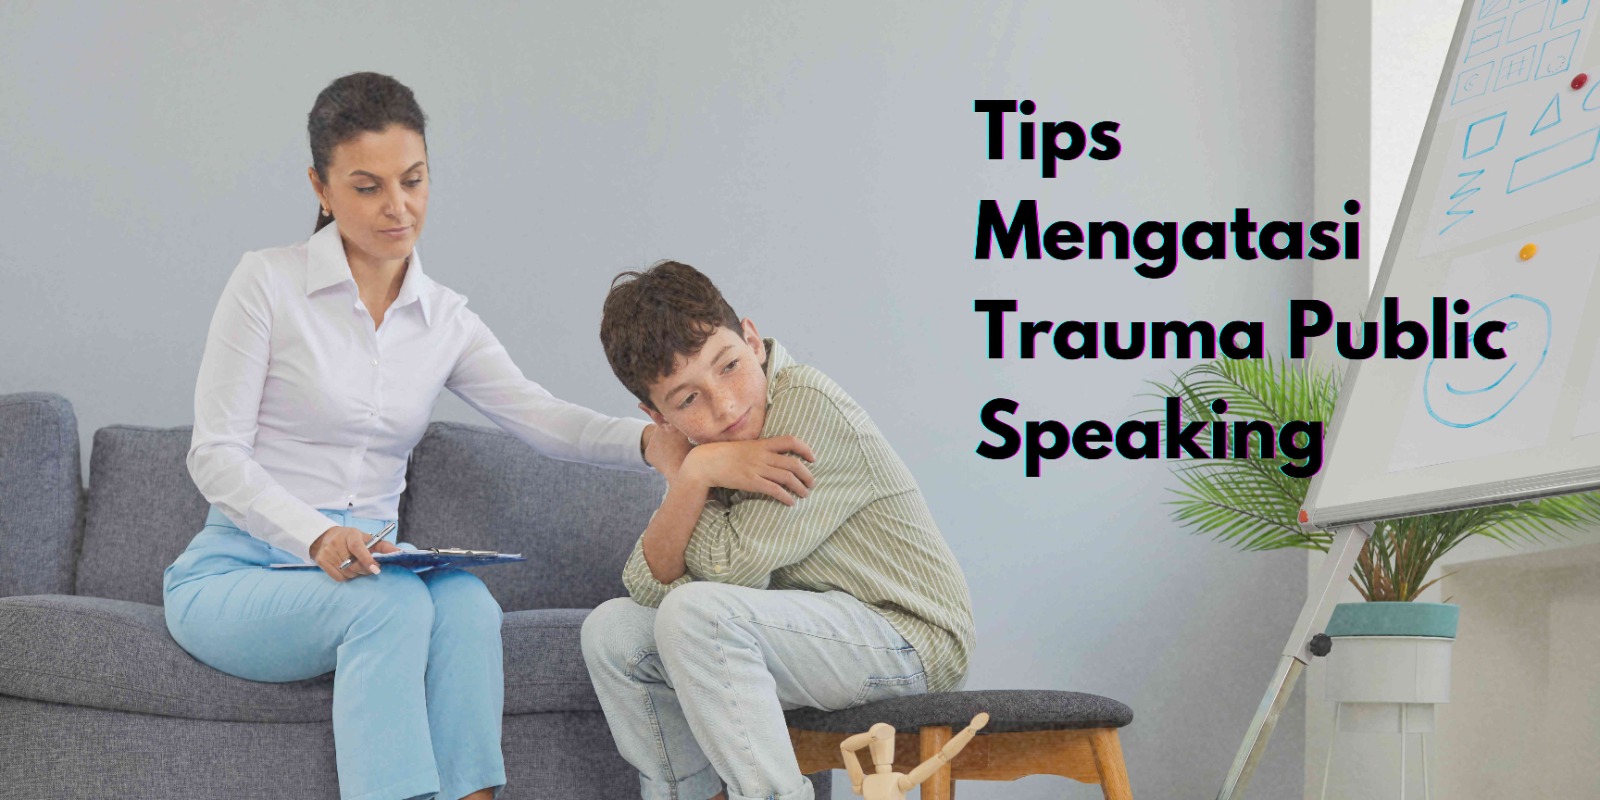 Tips Mengatasi Trauma Public Speaking